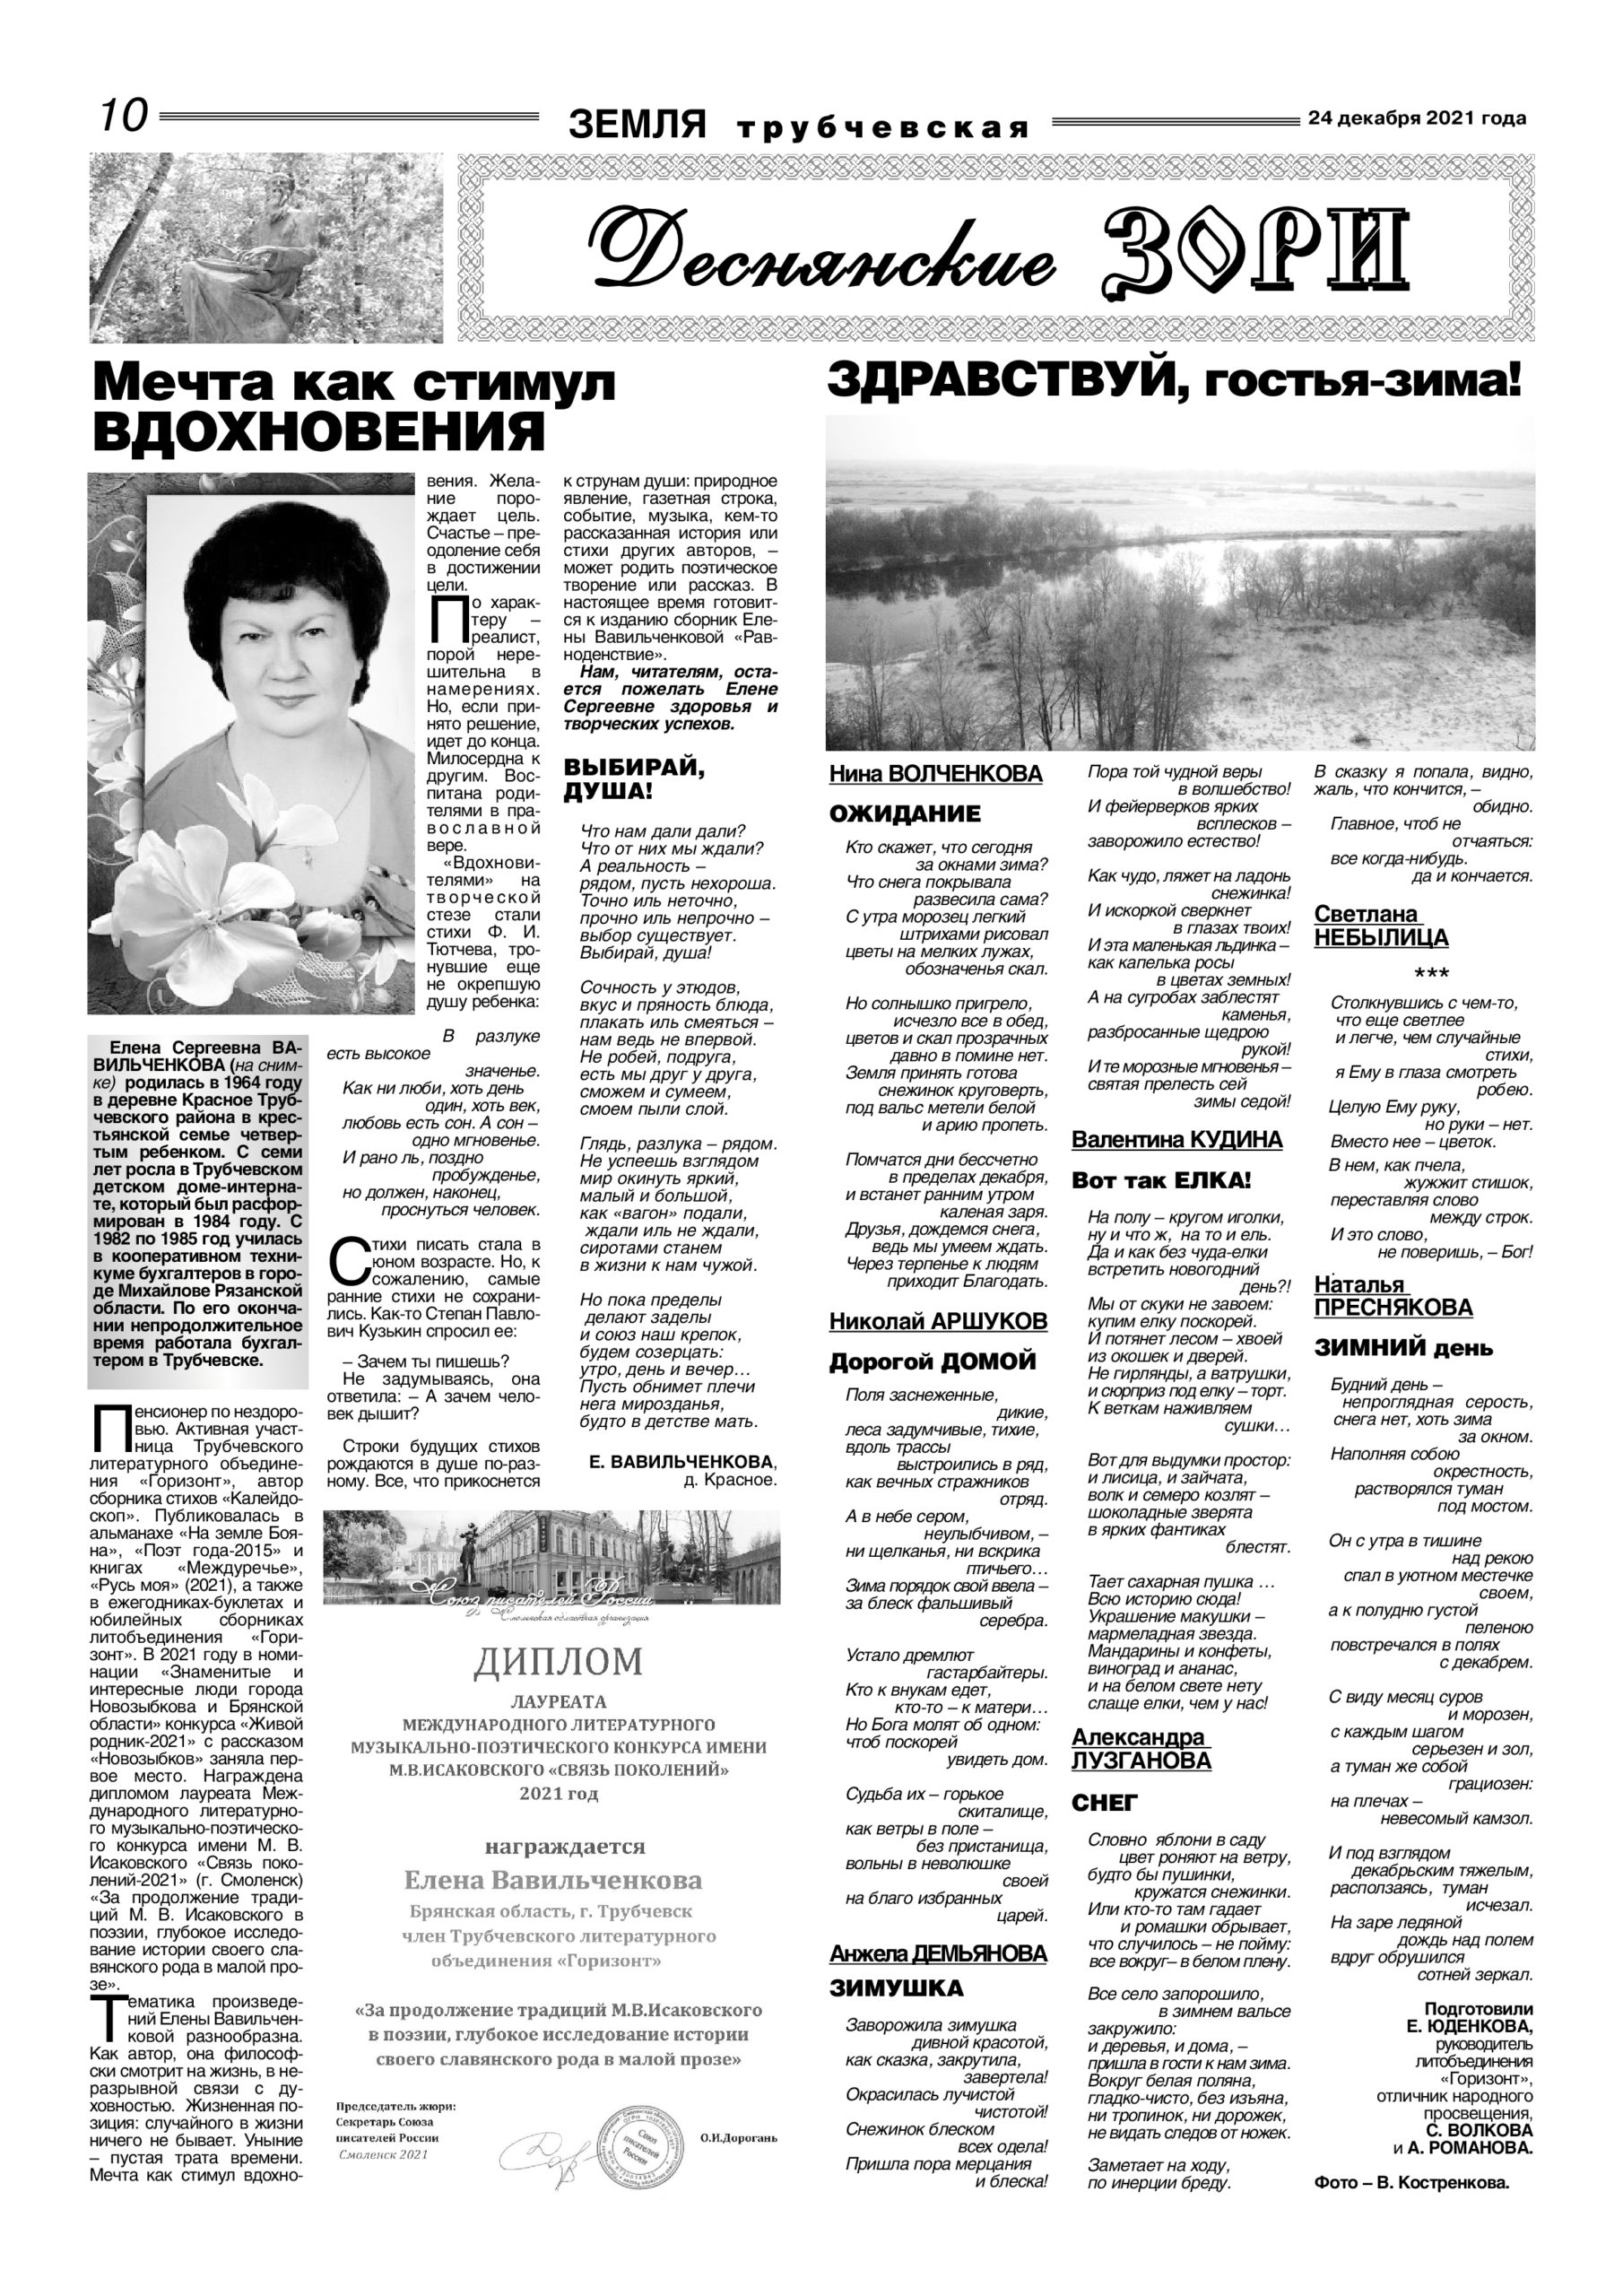 Декабрьская литературная страница в газете «Земля трубчевская»